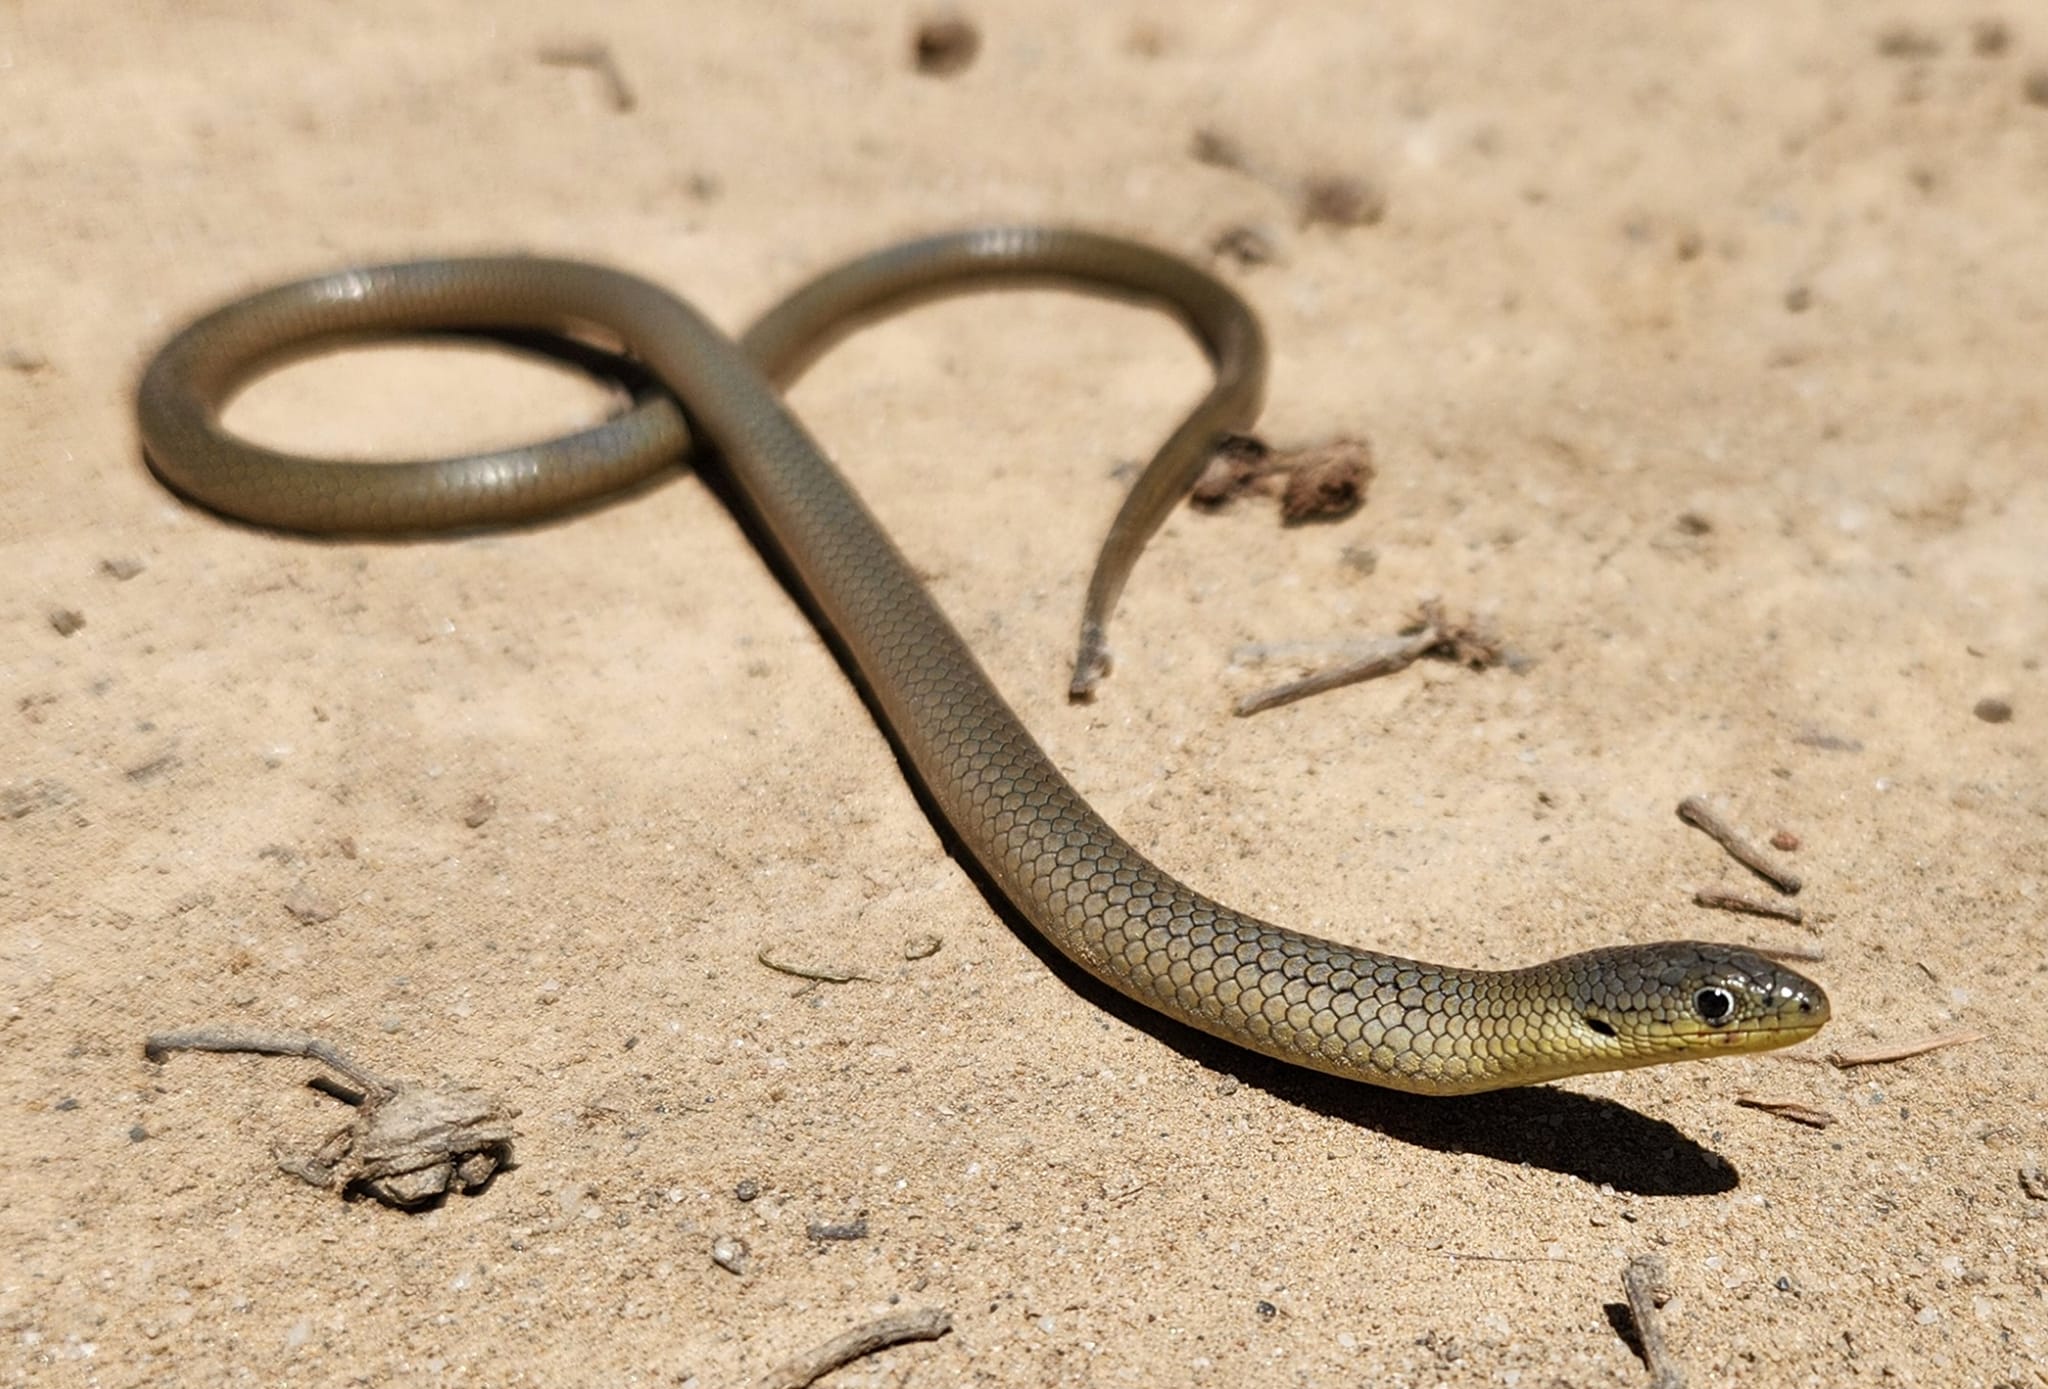 长长的棕色蜥蜴，长着大眼睛，长在沙滩上，看起来像一条棕色幼蛇